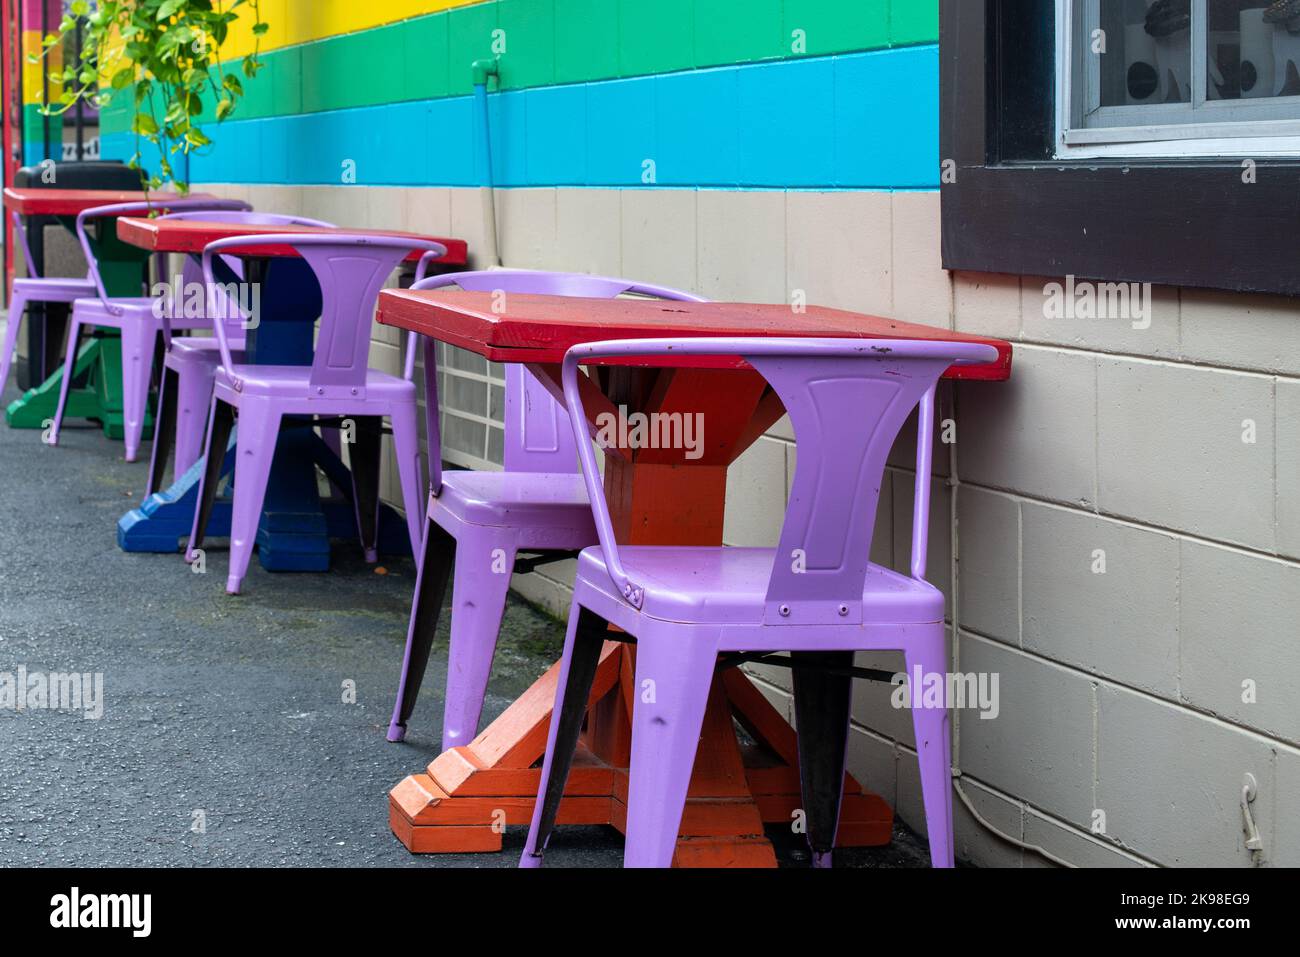 Ein Restaurant oder Cafe im Freien mit hellgelben, grünen und blauen Strichen an der Außenwand. Die Terrassentische sind farbenfroh aus rotem Metall Stockfoto